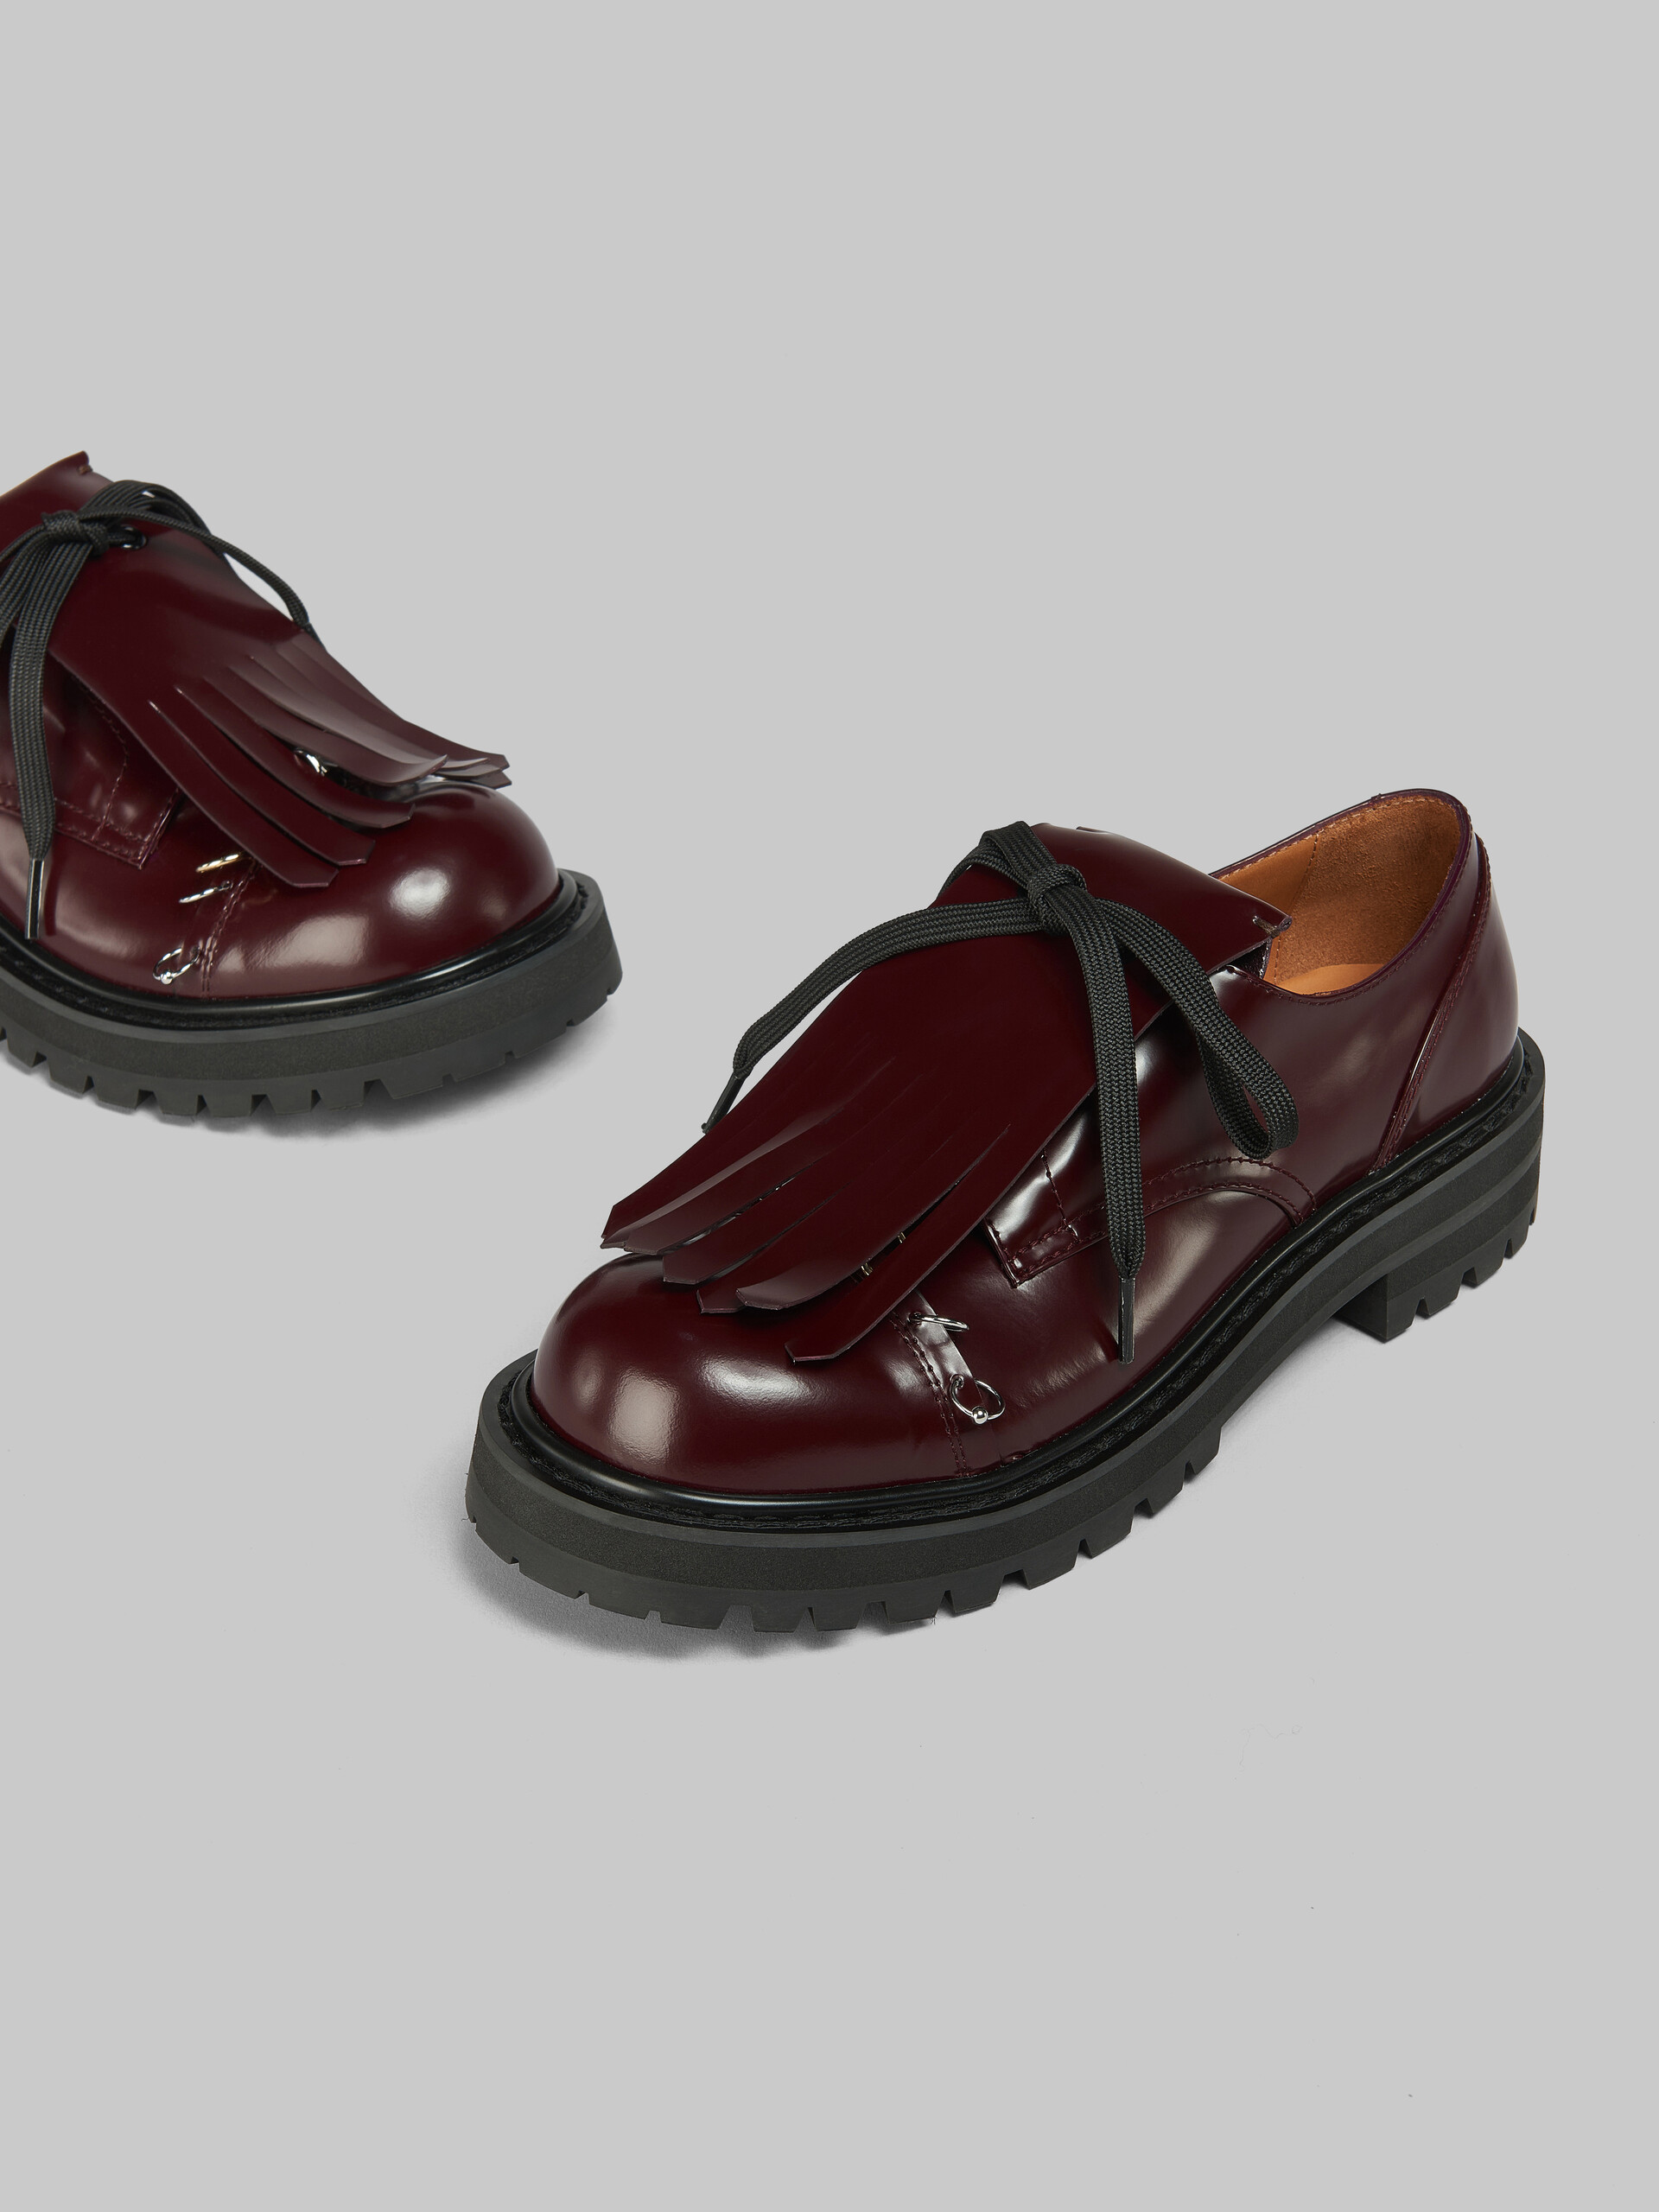 Zapato Derby Dada de piel negra con maxiflecos - Zapatos con cordones - Image 5